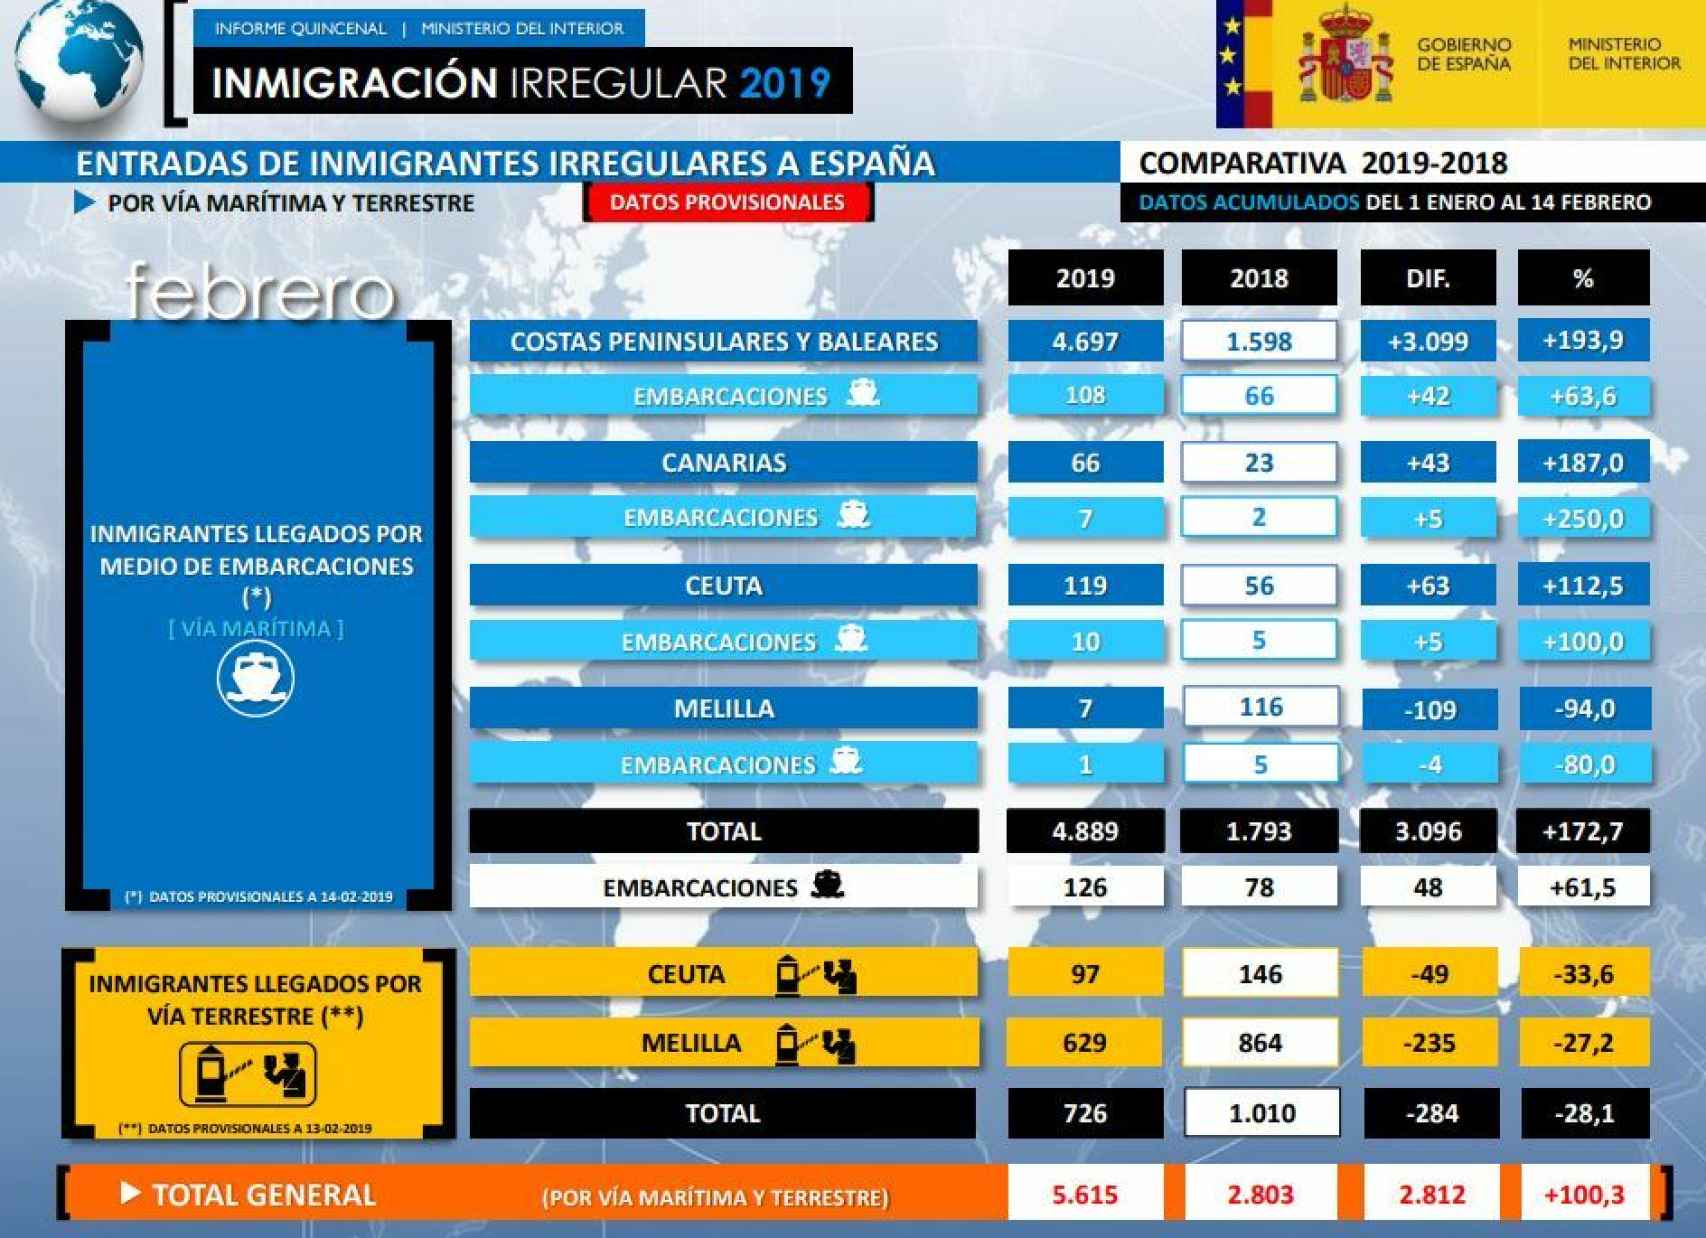 Inmigración irregular en España del 1 al 14 de febrero 2019.